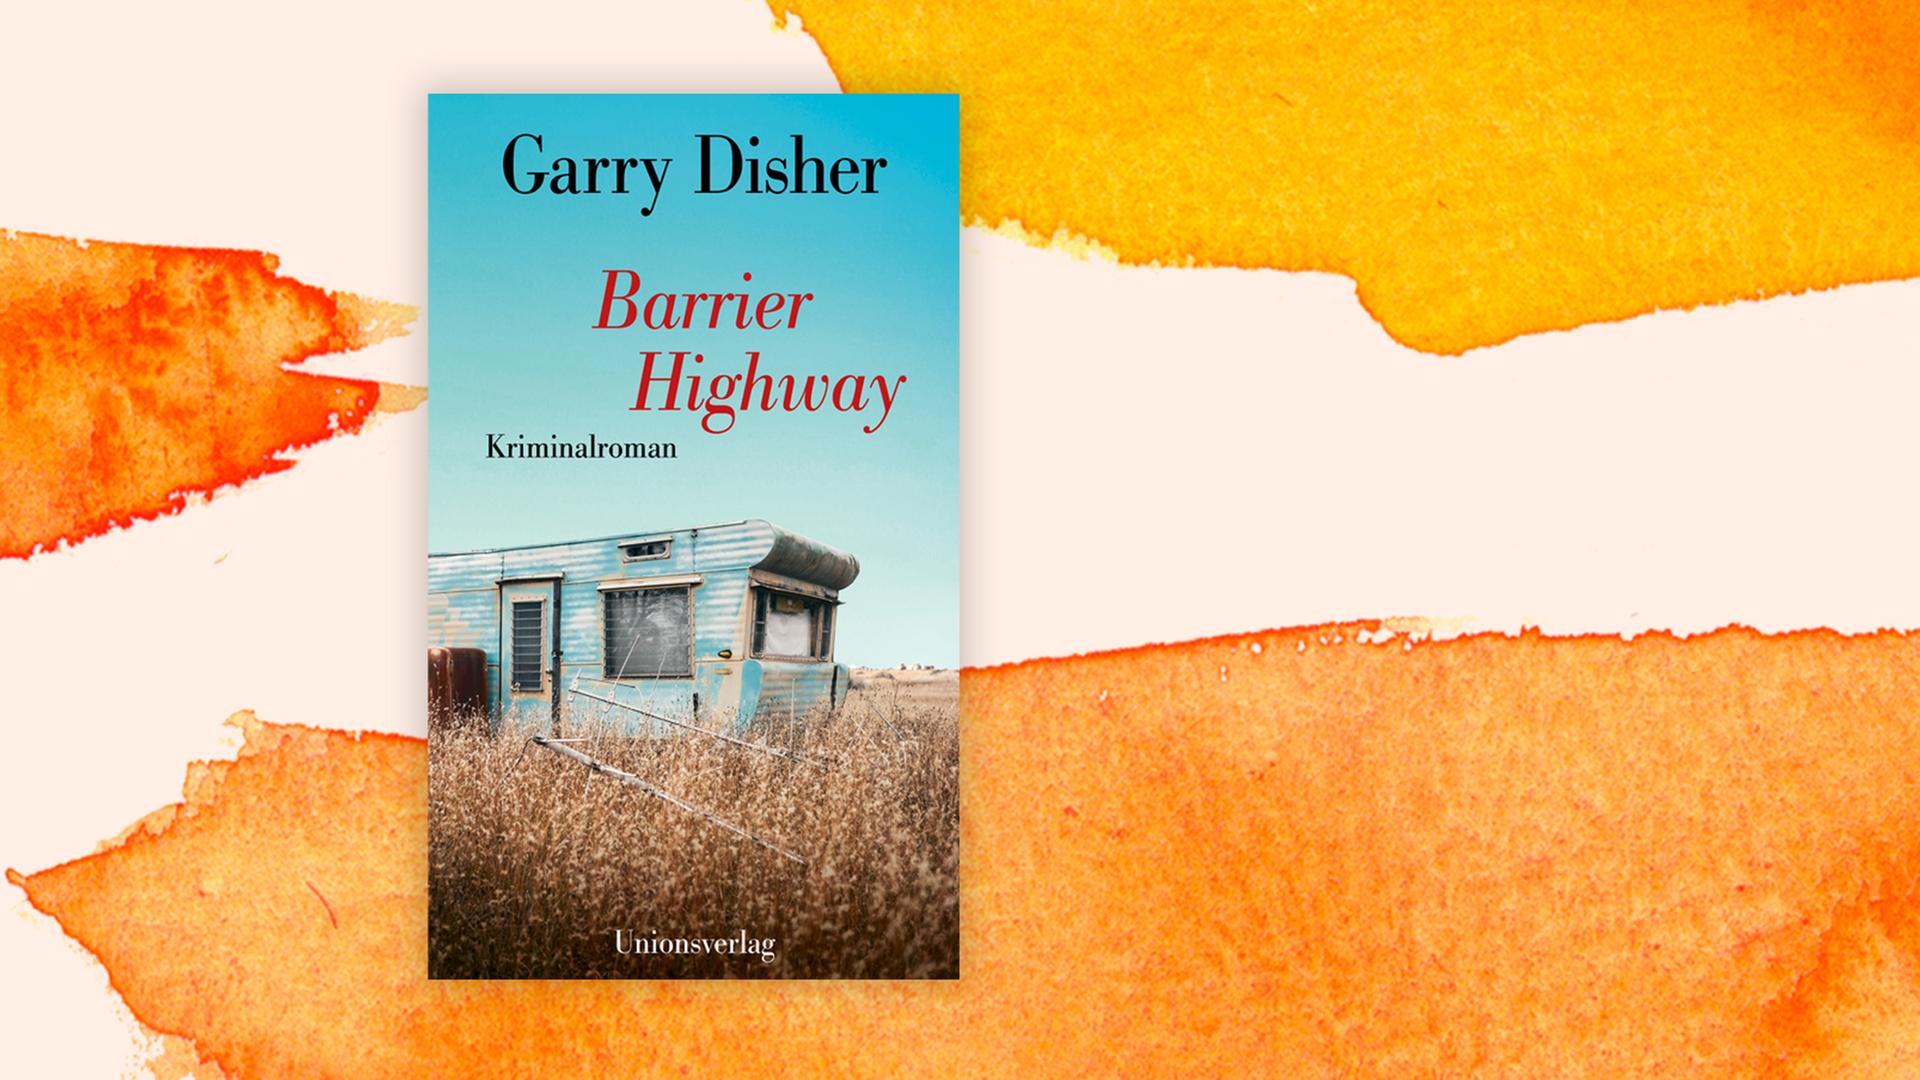 Das Cover des Buches "Barrier Highway" auf orange-weißem Grund.